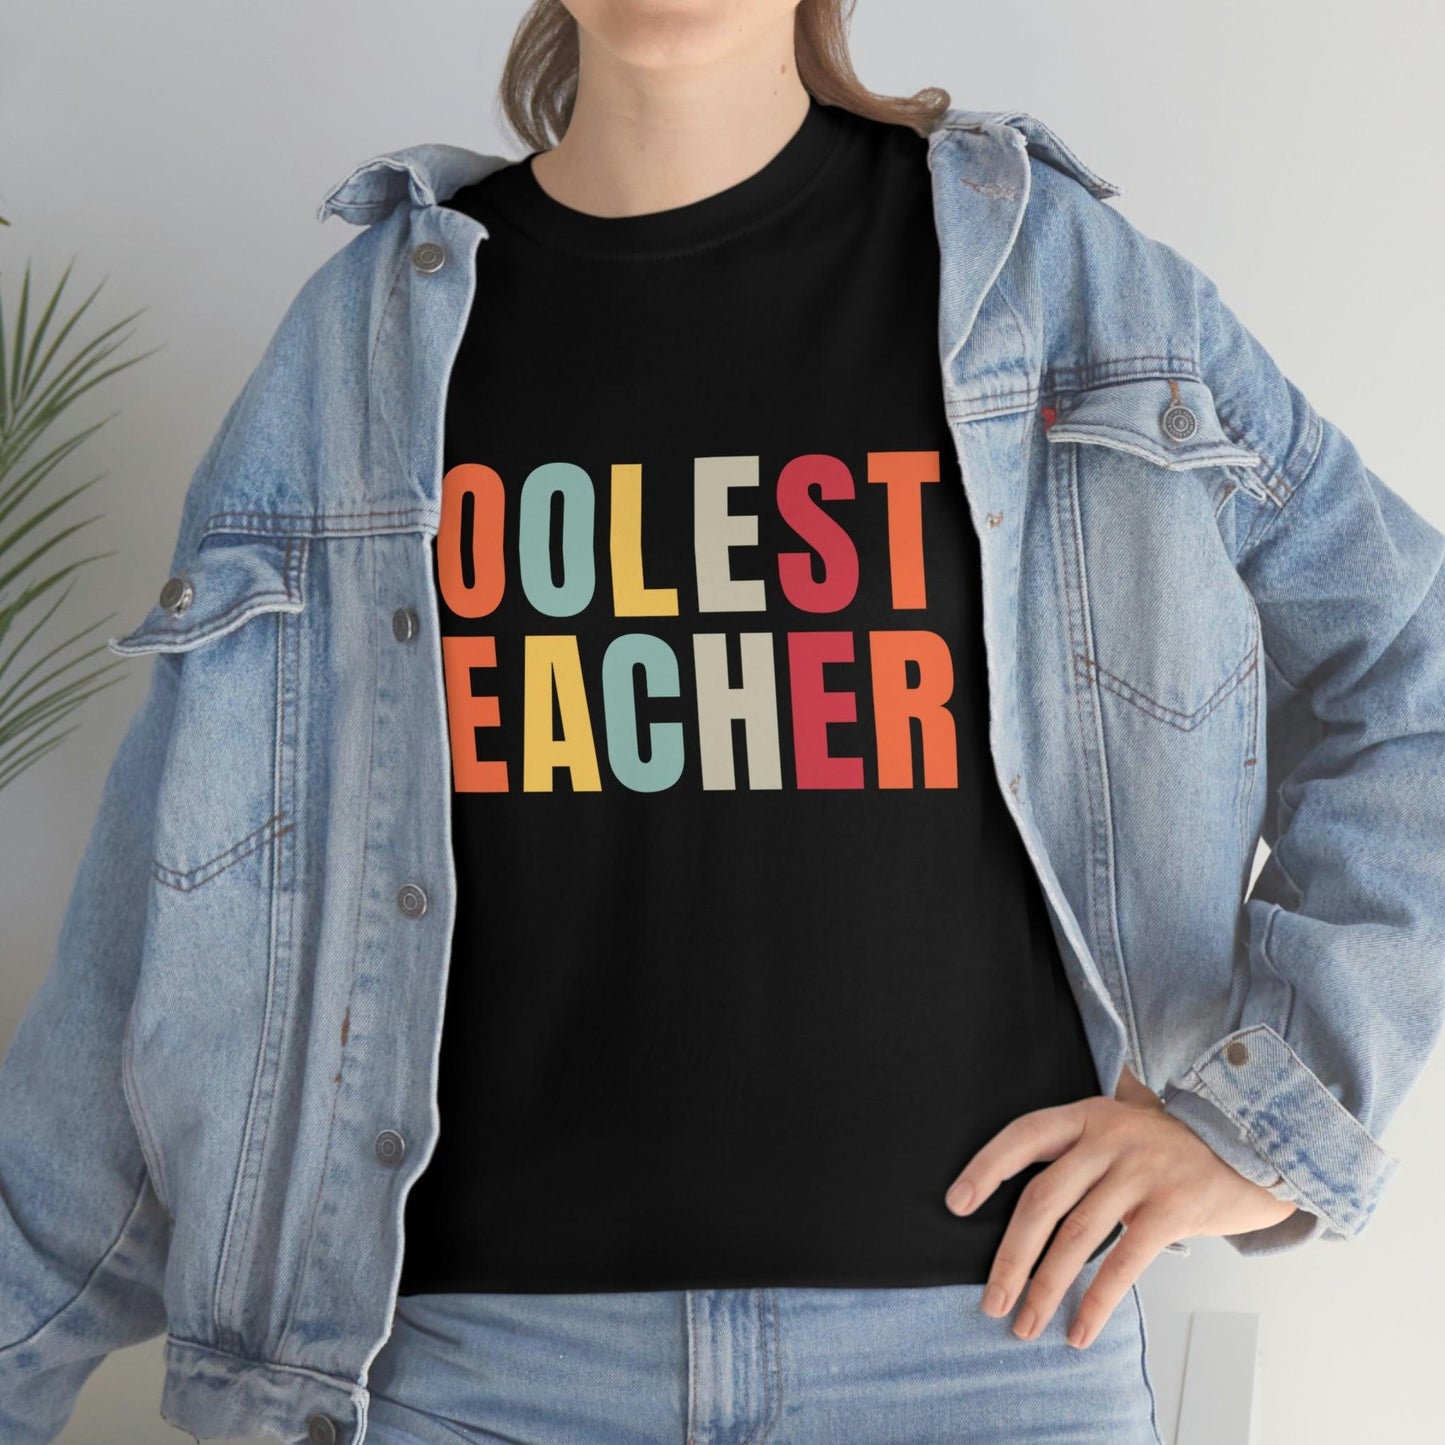 Teacher appreciation gift - Coolest Teacher Shirt - Teacher shirt - Giftsmojo